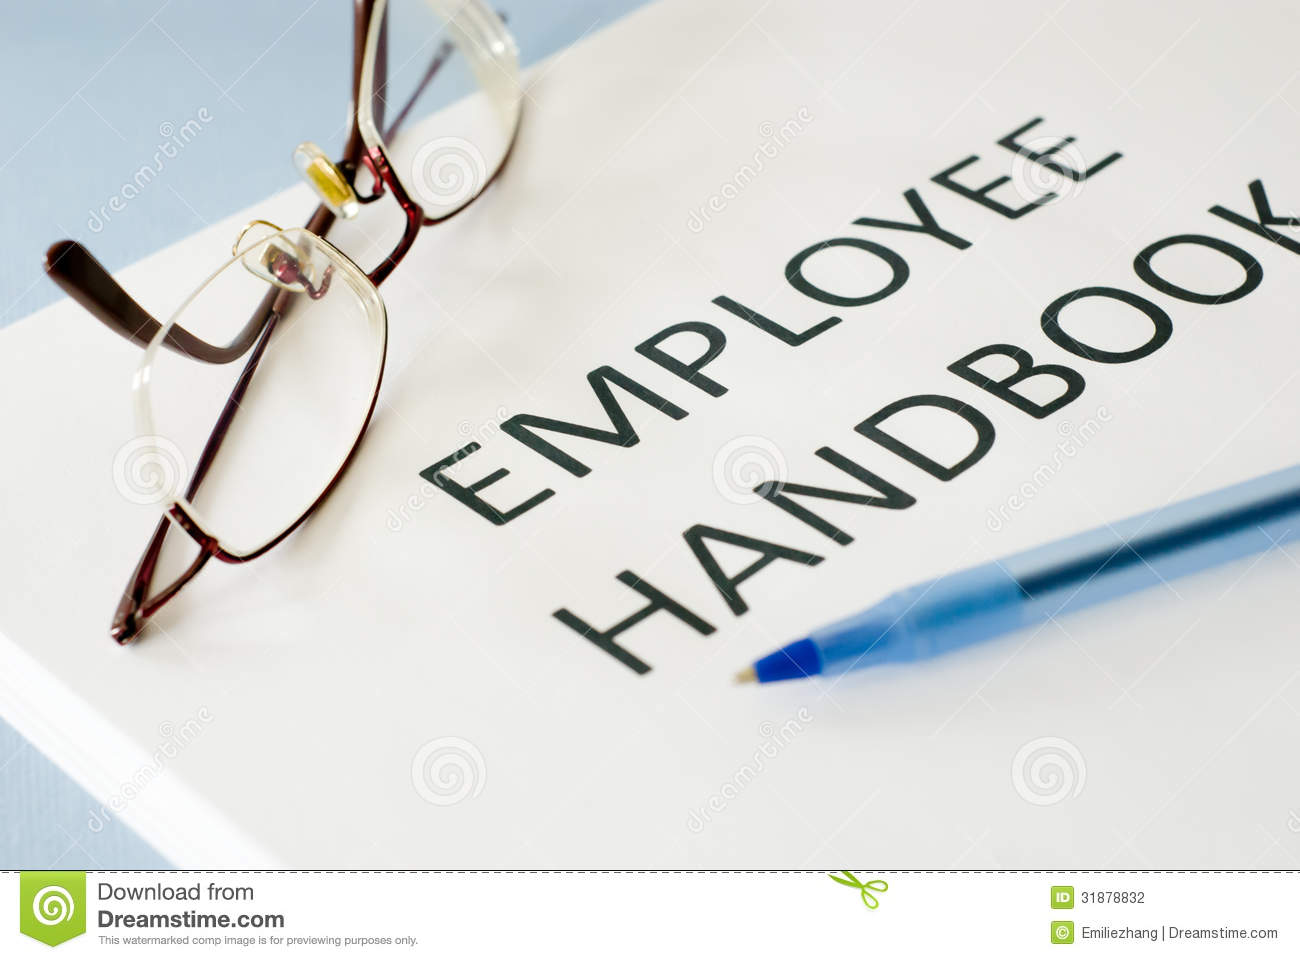 Employee Handbook Stock Photography   Image  31878832